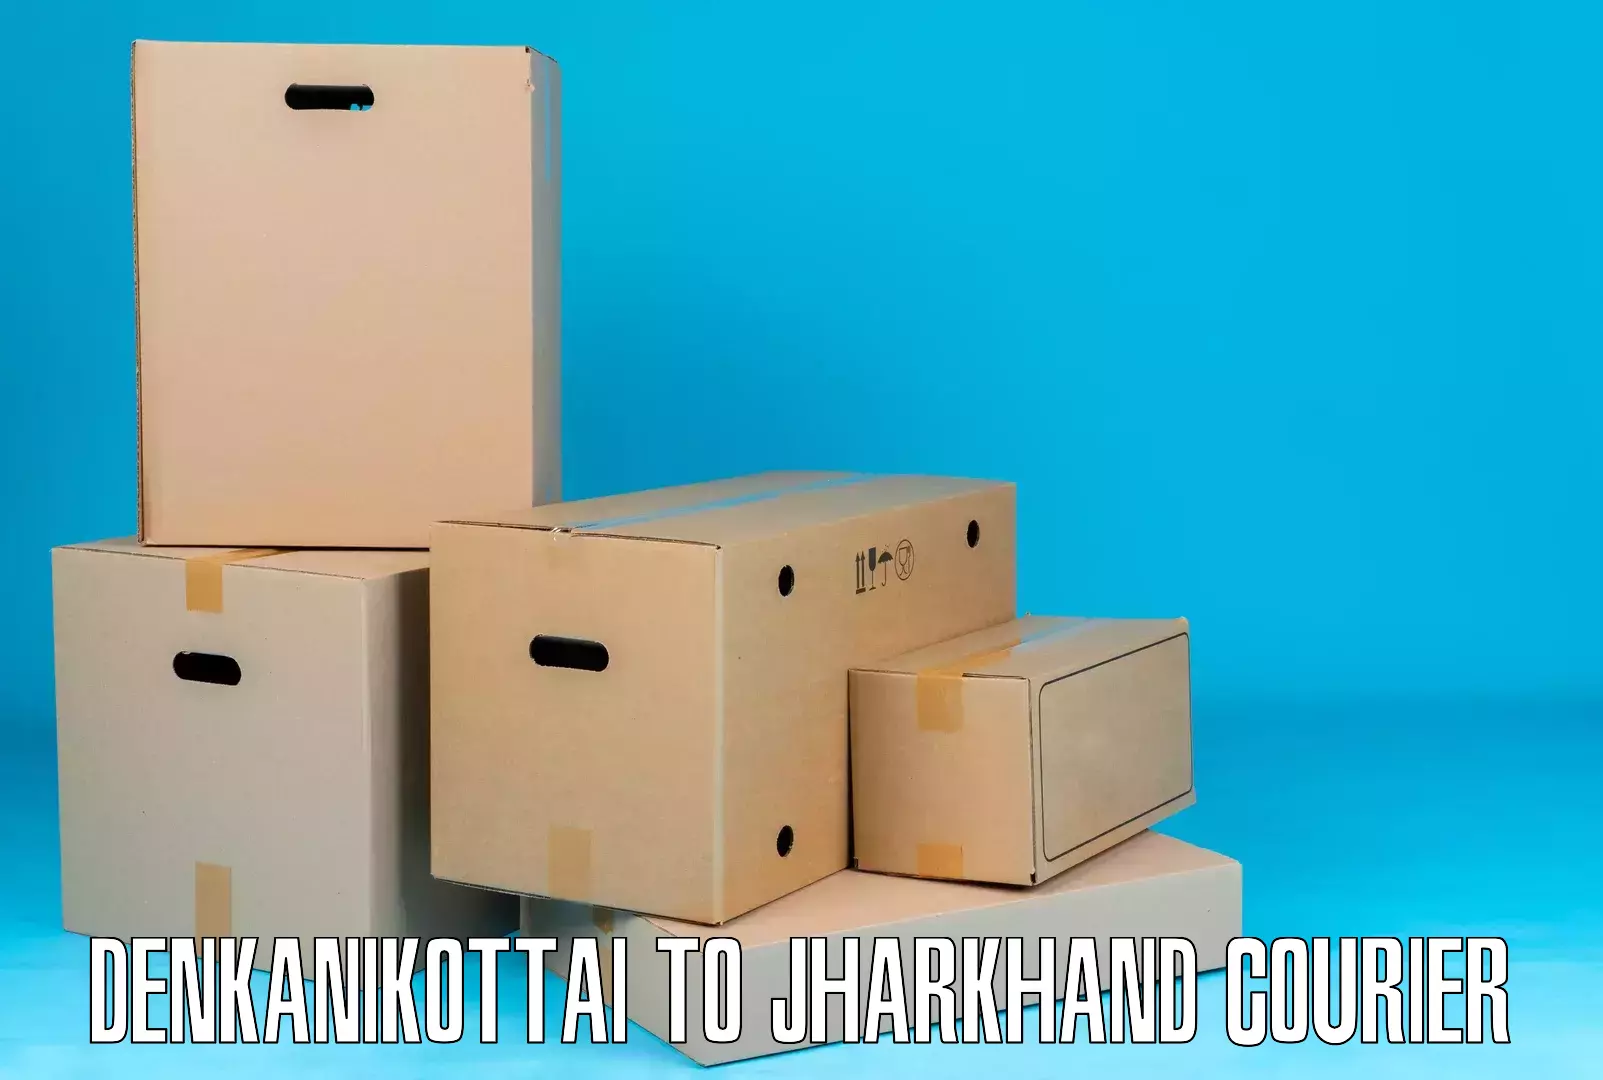 Package tracking Denkanikottai to Rangalia